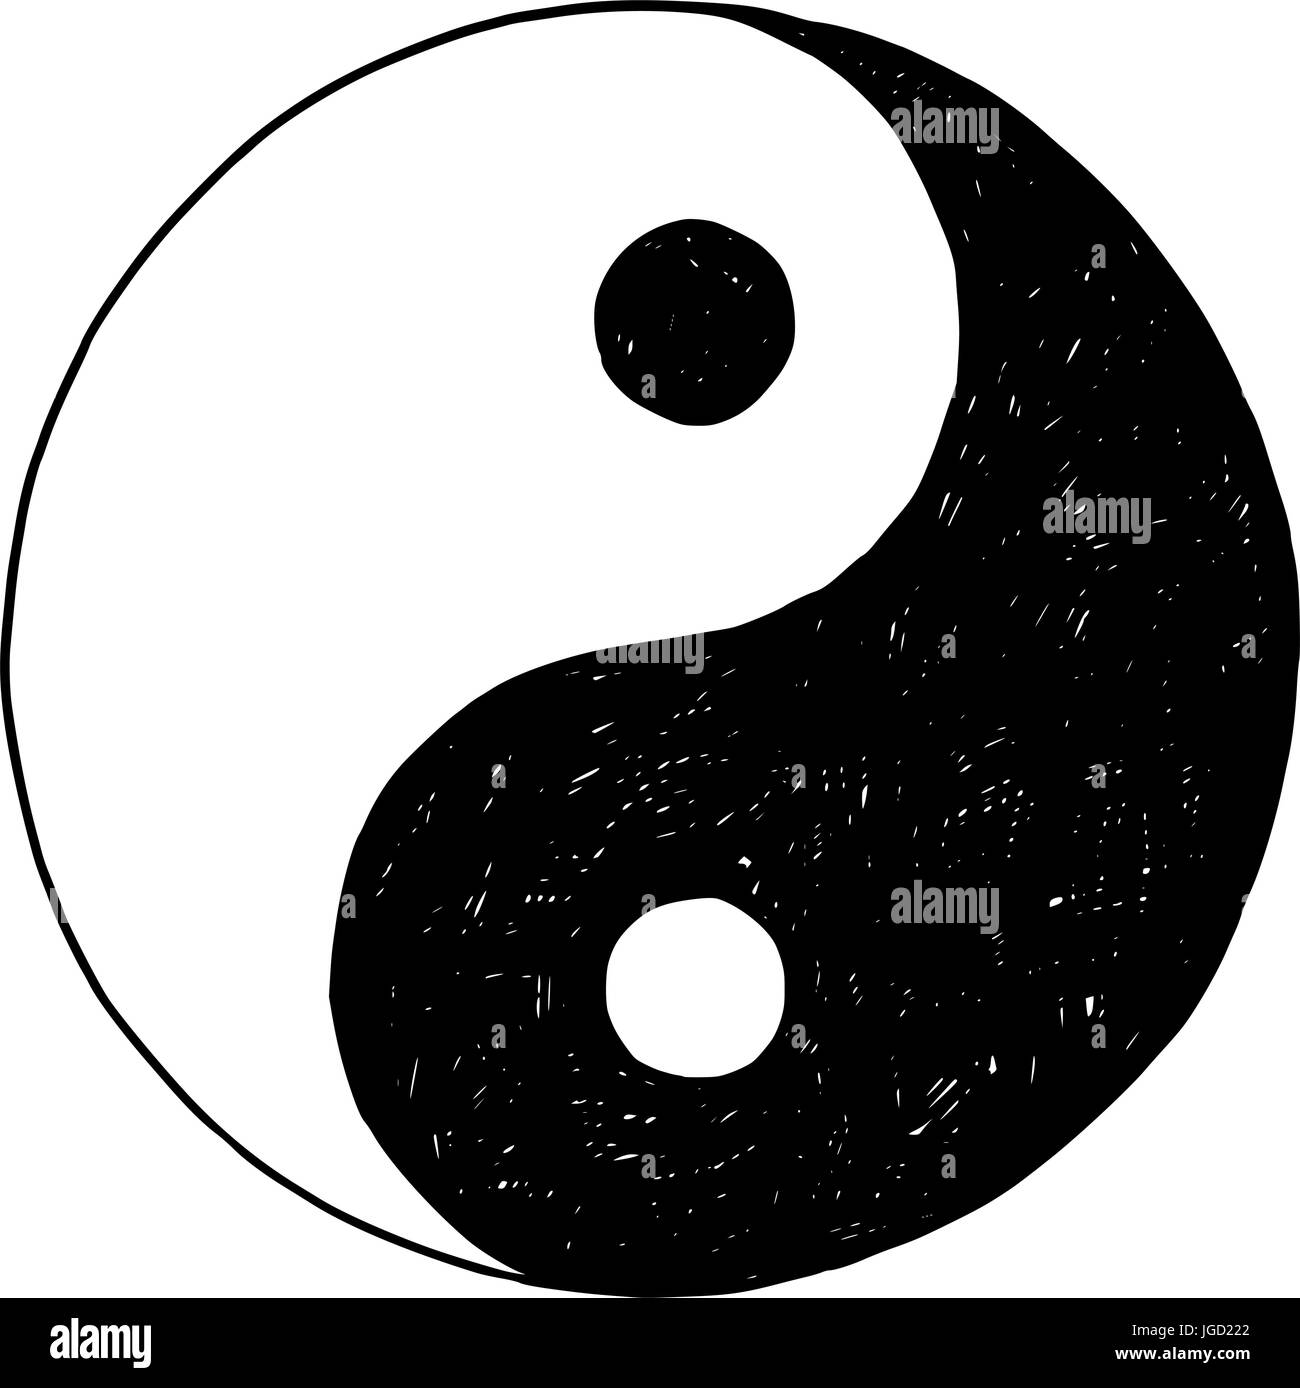 Disegnata a mano vector doodle illustrazione di yin yang jin jang simbolo. Illustrazione Vettoriale